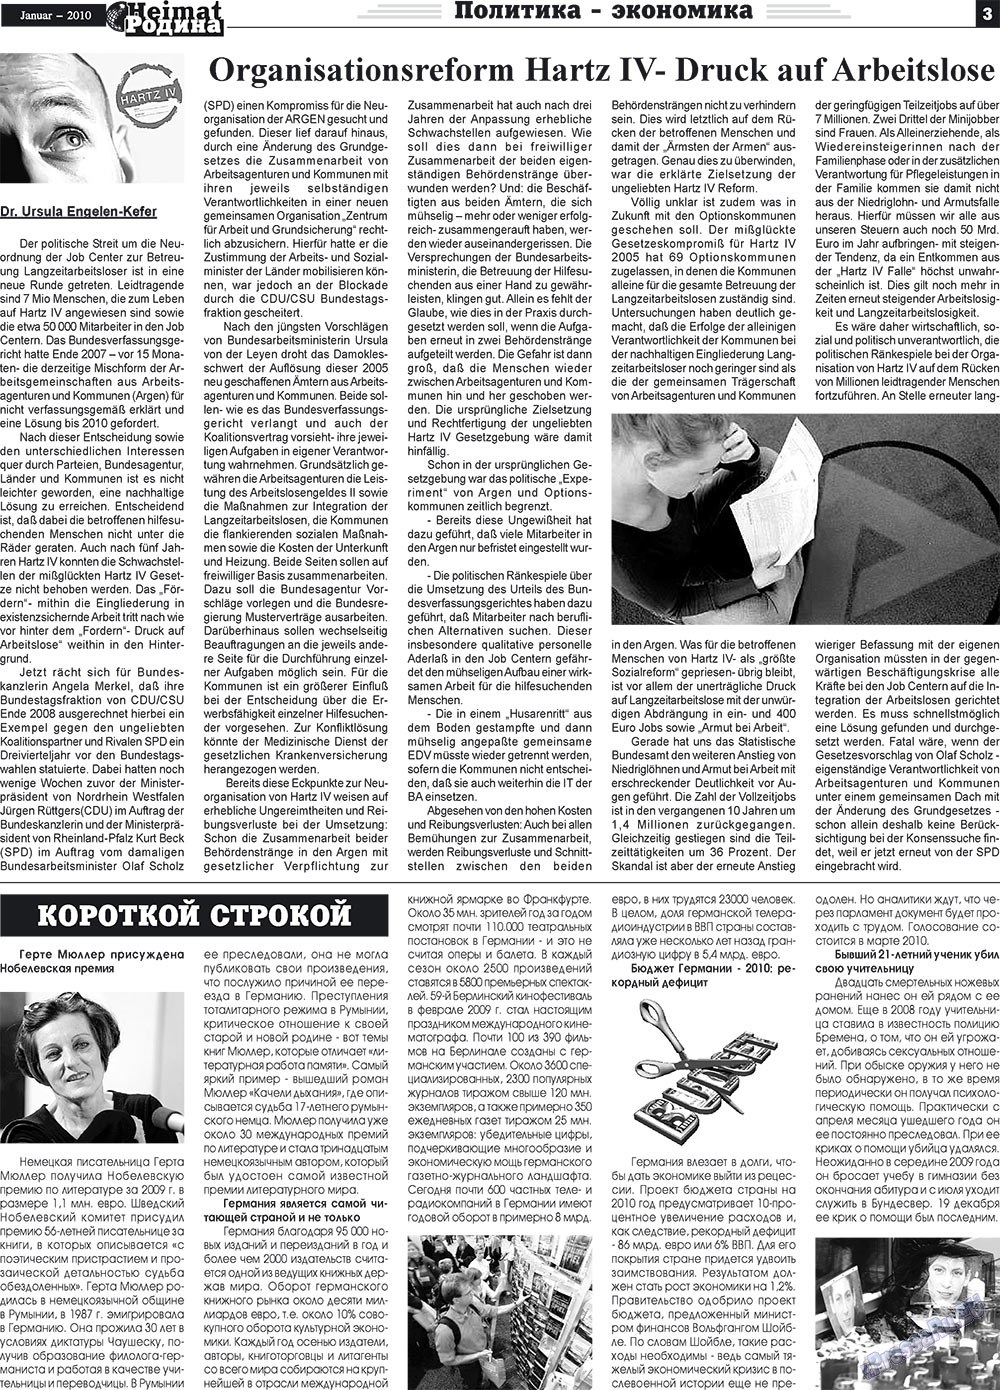 Heimat-Родина (газета). 2010 год, номер 1, стр. 3